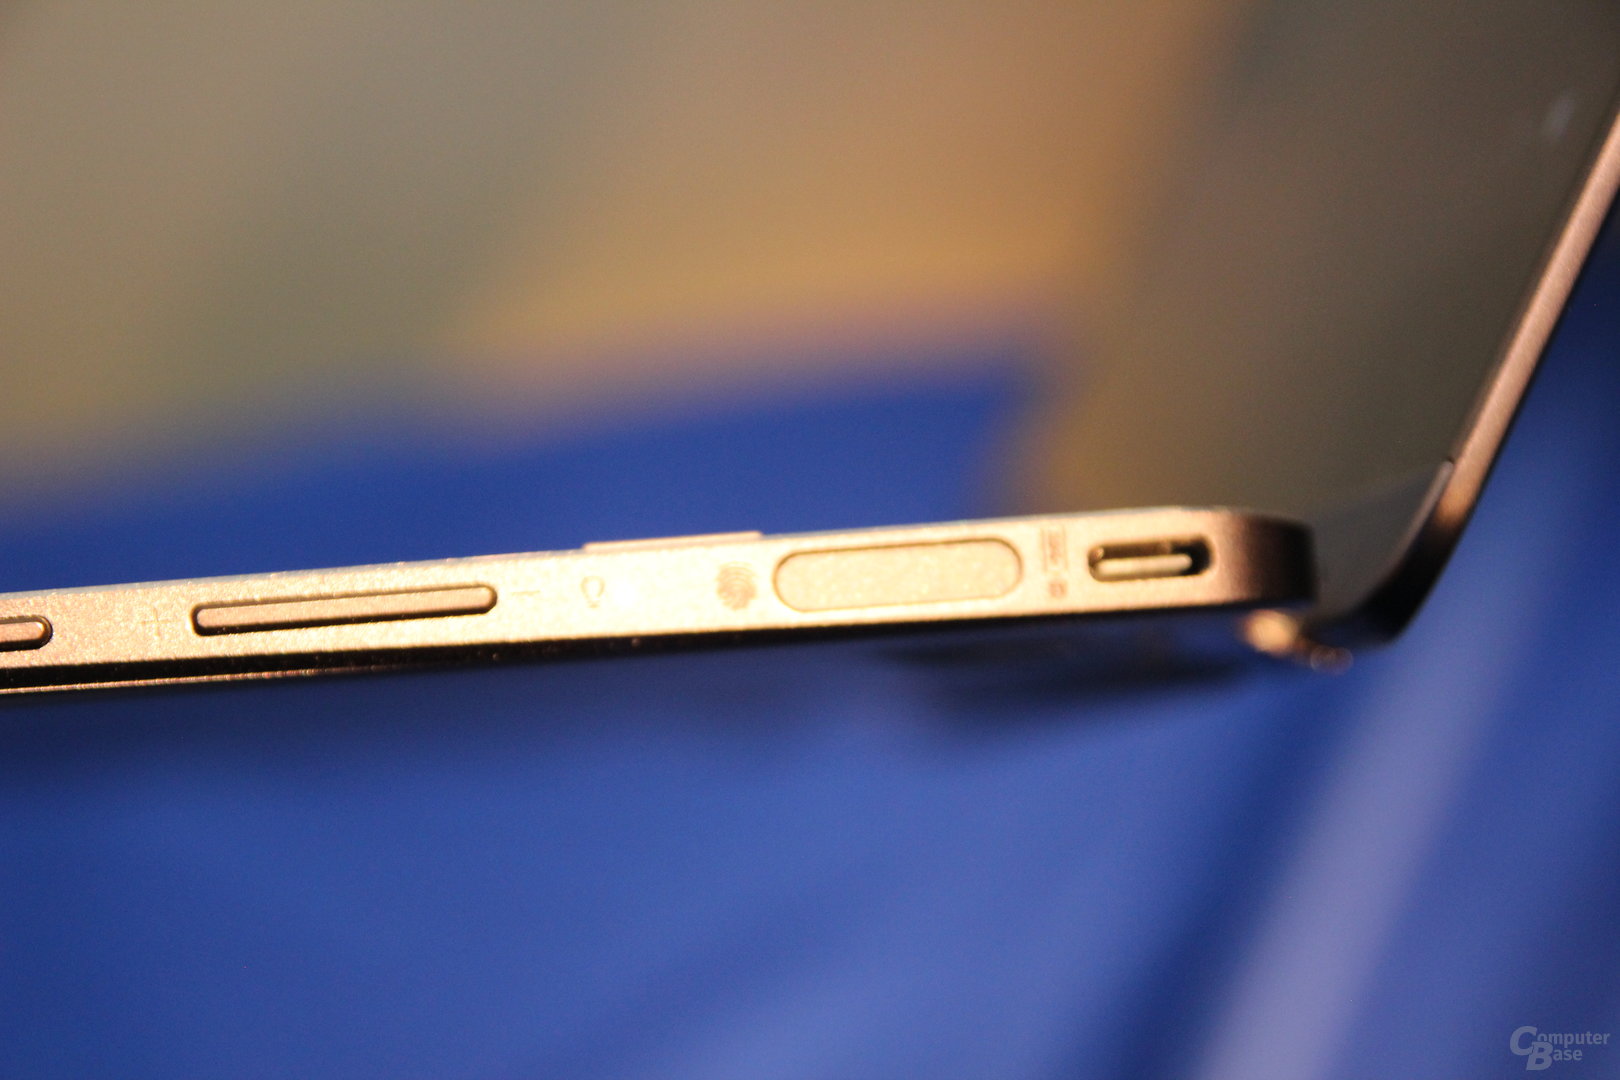 Asus Zenbook Flip S (UX370)